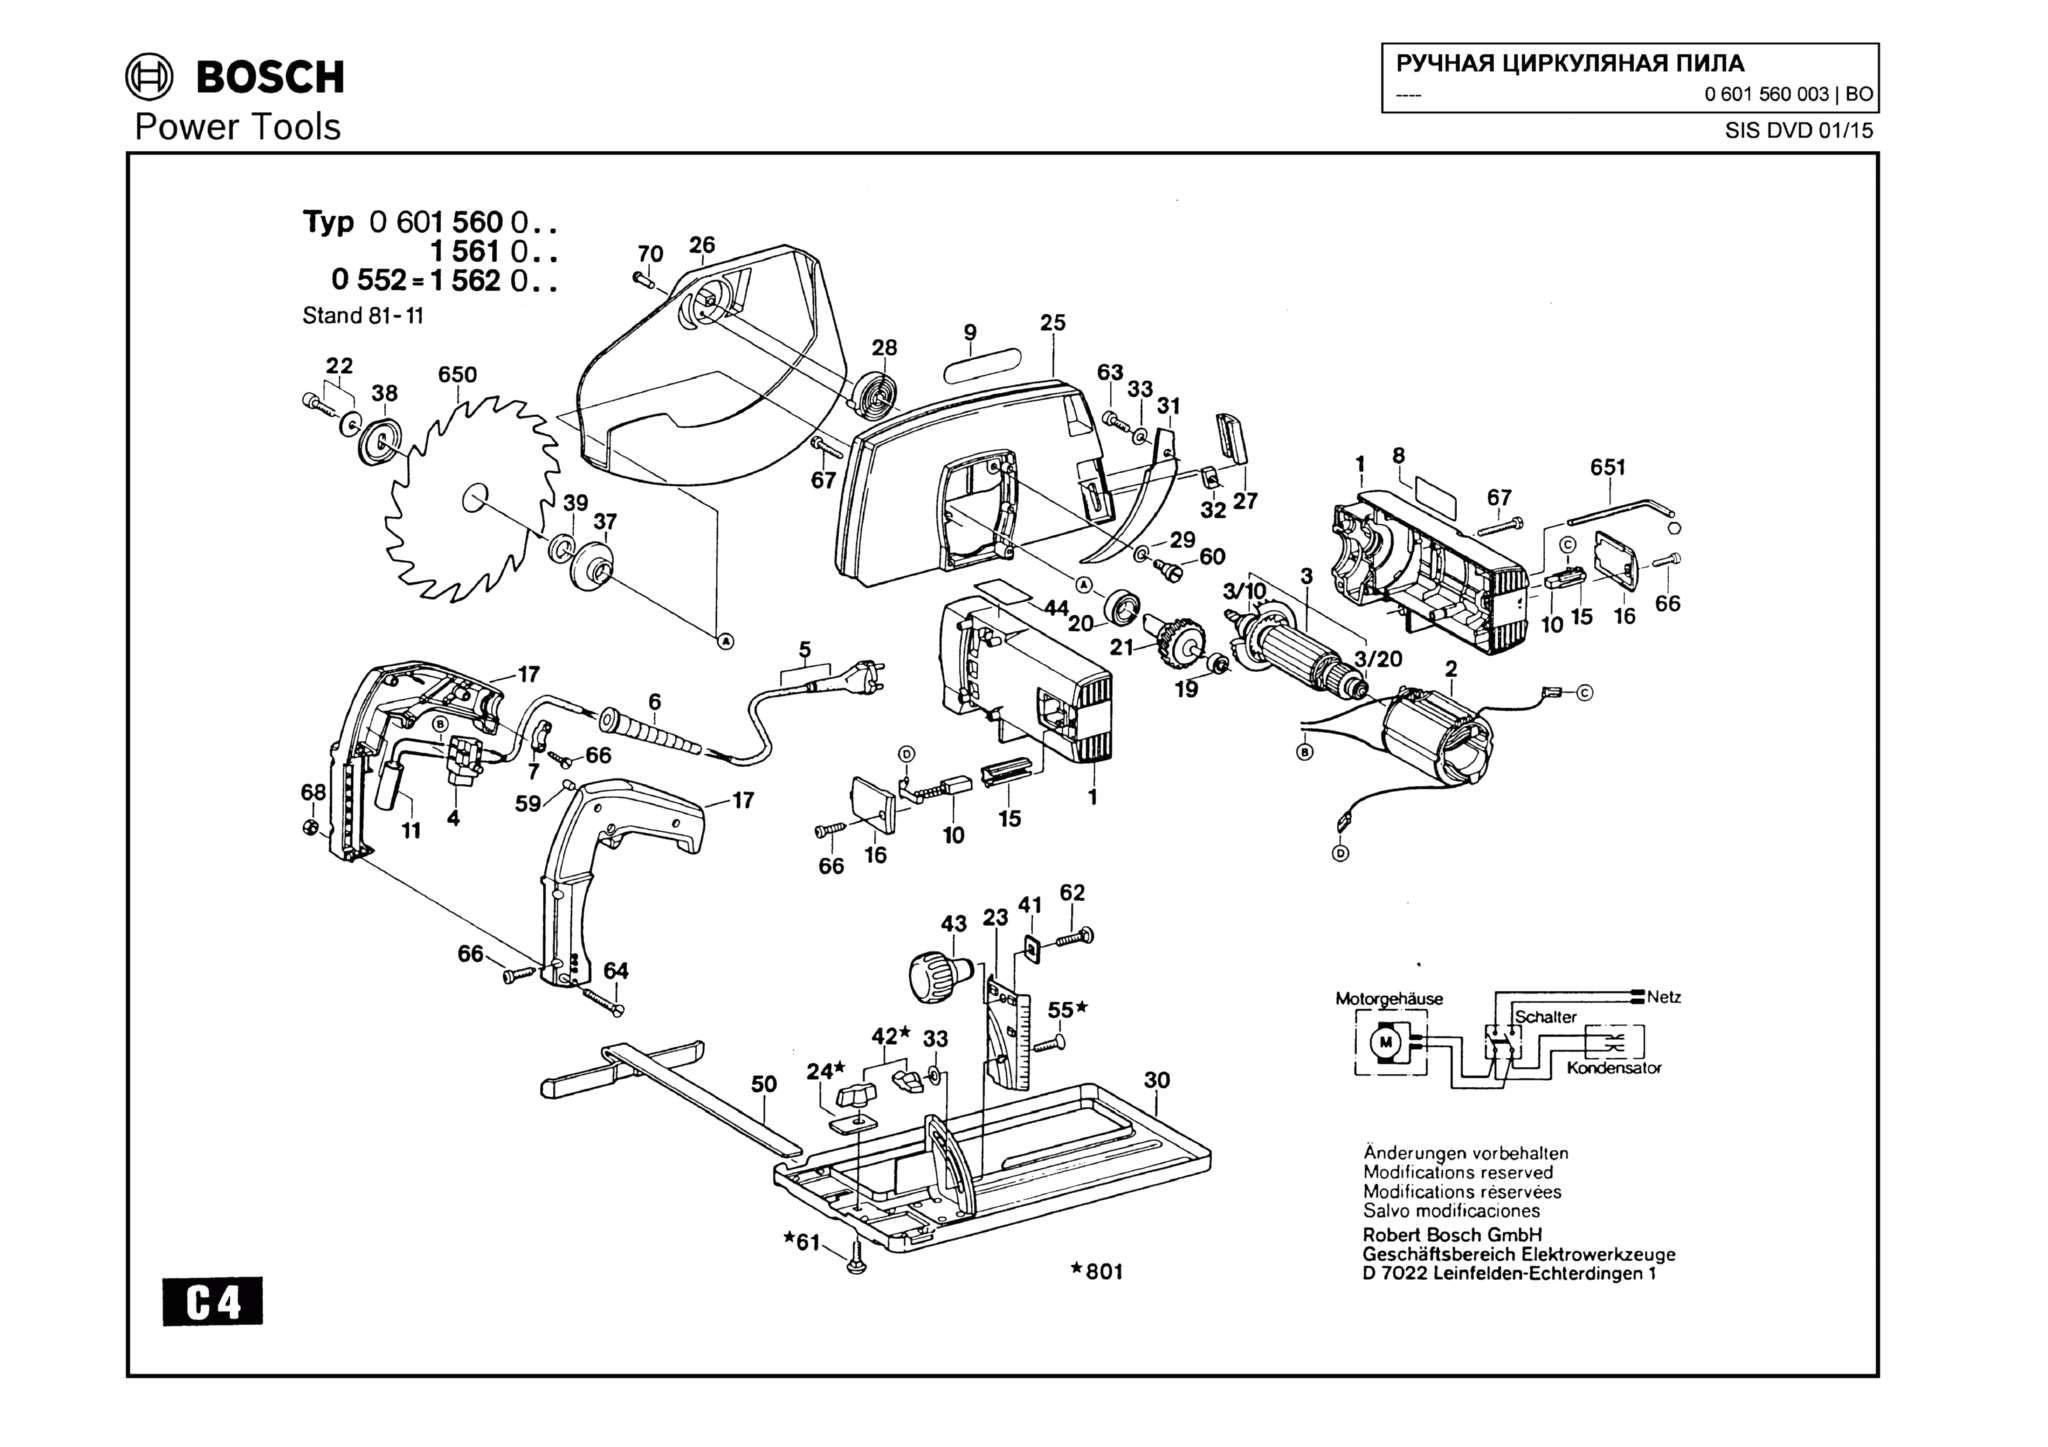 Запчасти, схема и деталировка Bosch (ТИП 0601560003)